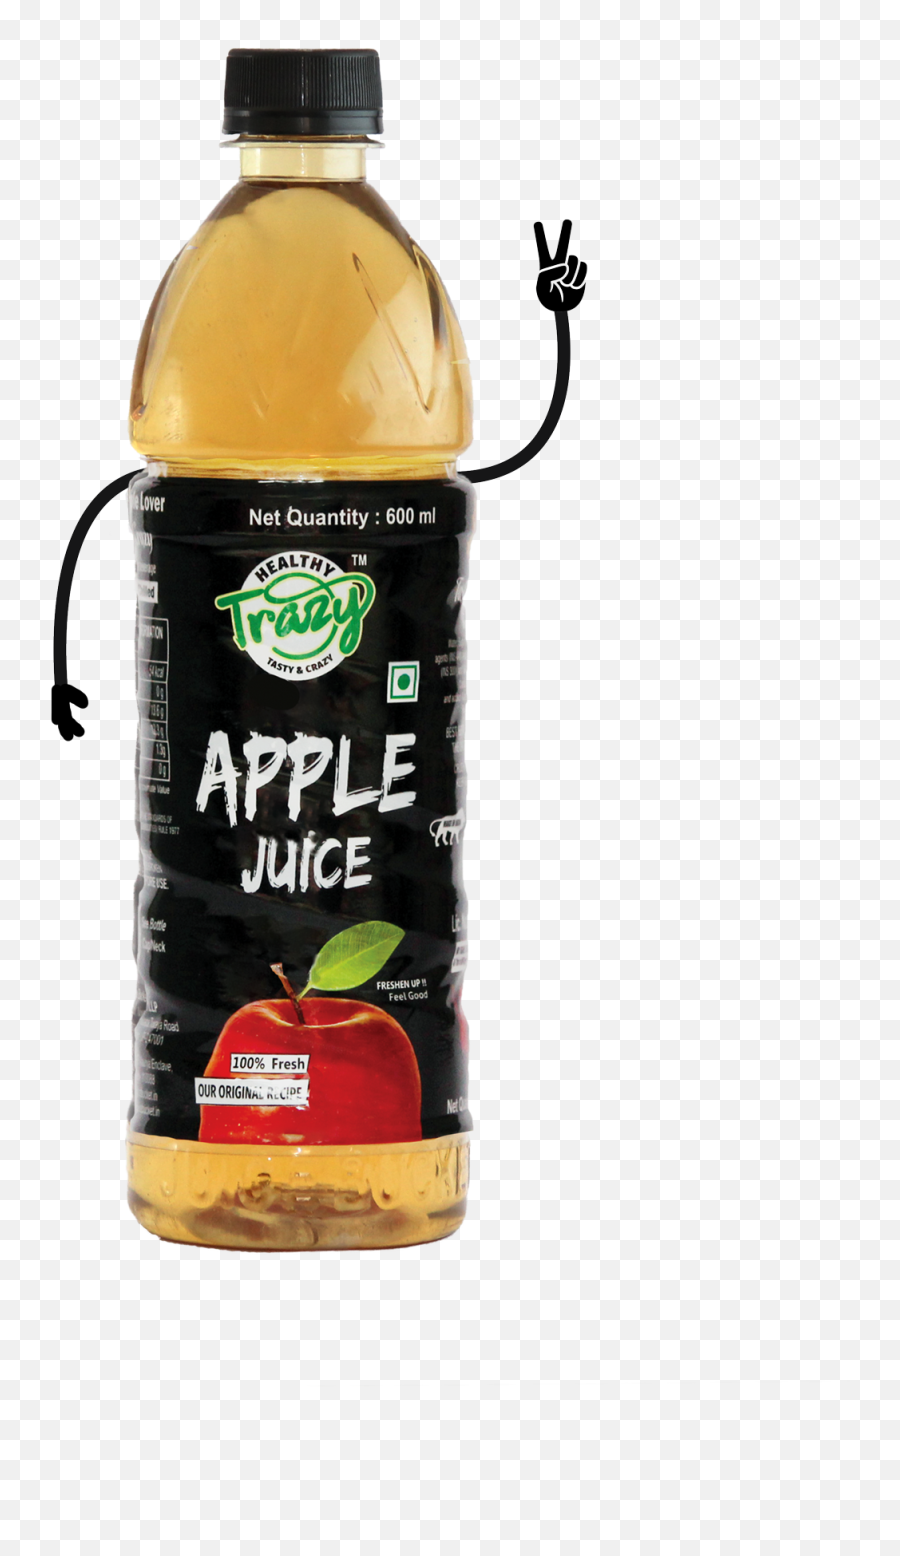 Apple Juice Trazy Juices - Plastic Bottle Png,Apple Juice Png